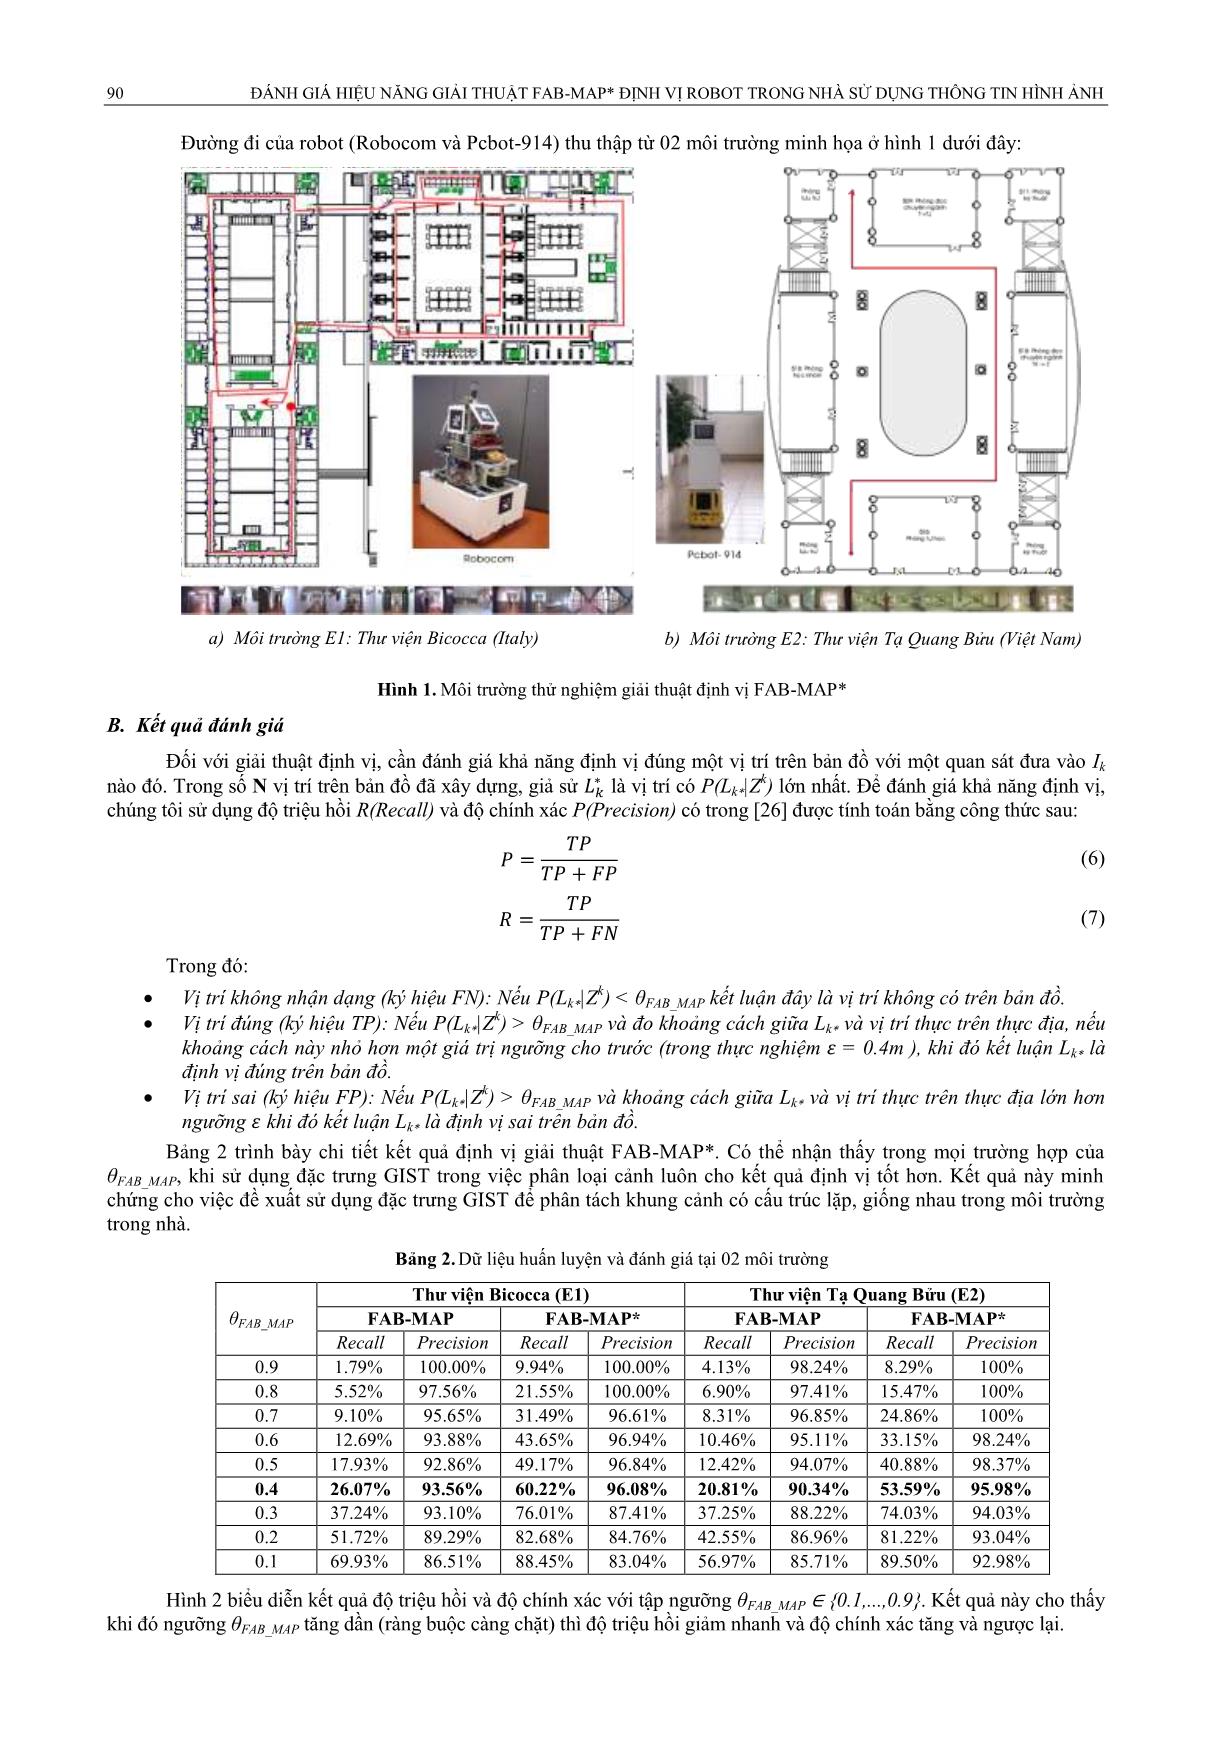 Đánh giá hiệu năng giải thuật fab - map định vị robot trong nhà sử dụng thông tin hình ảnh trang 5